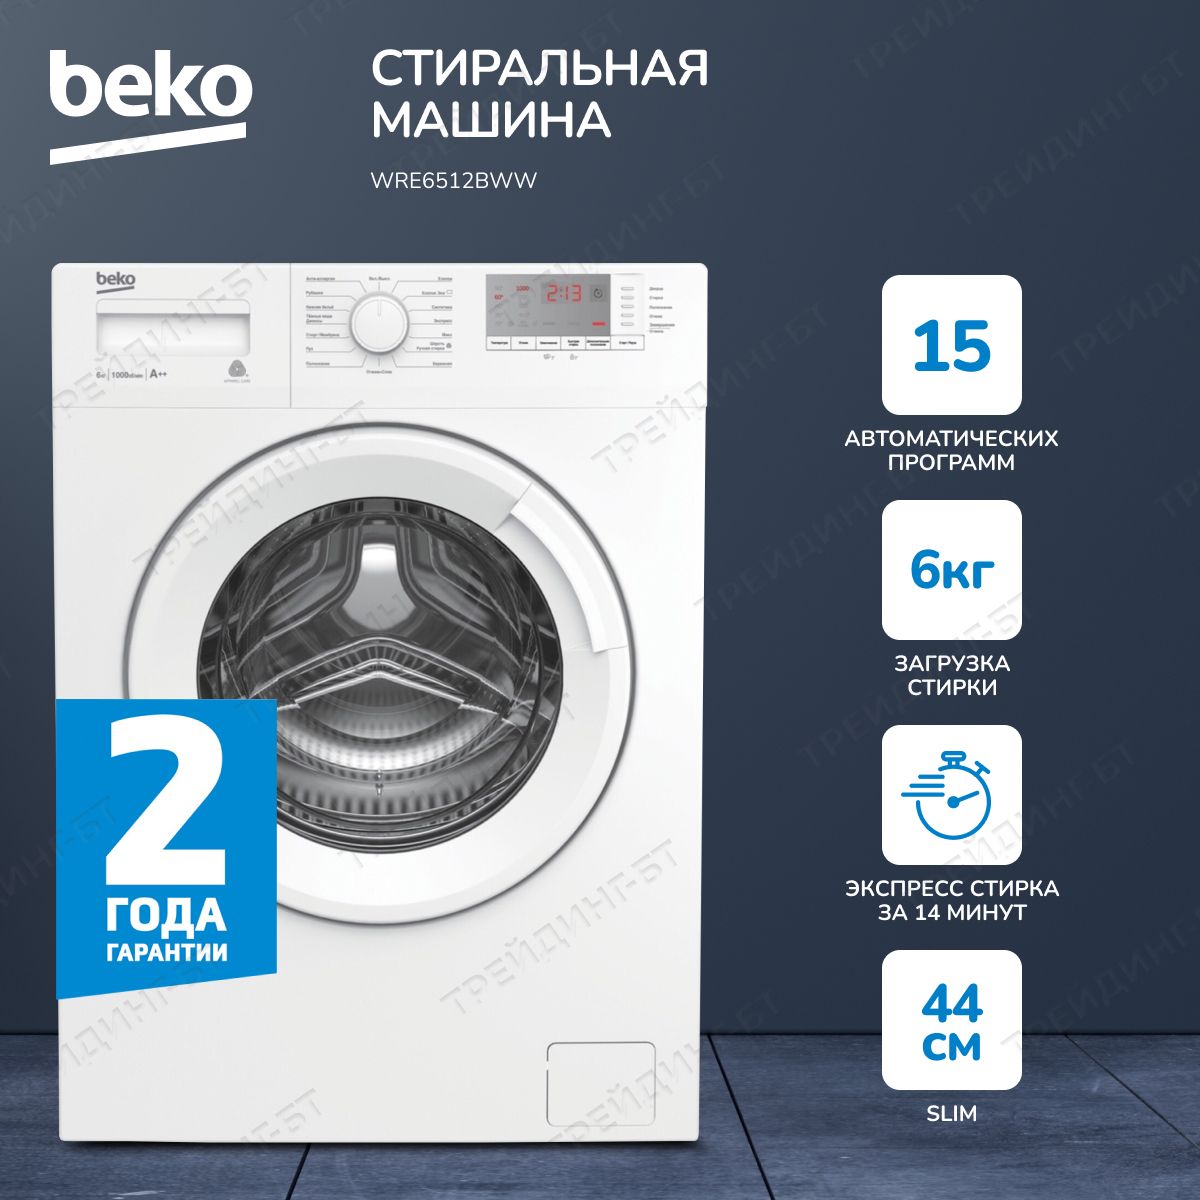 Ремонт стиральной машины Beko на дому в Казани недорого